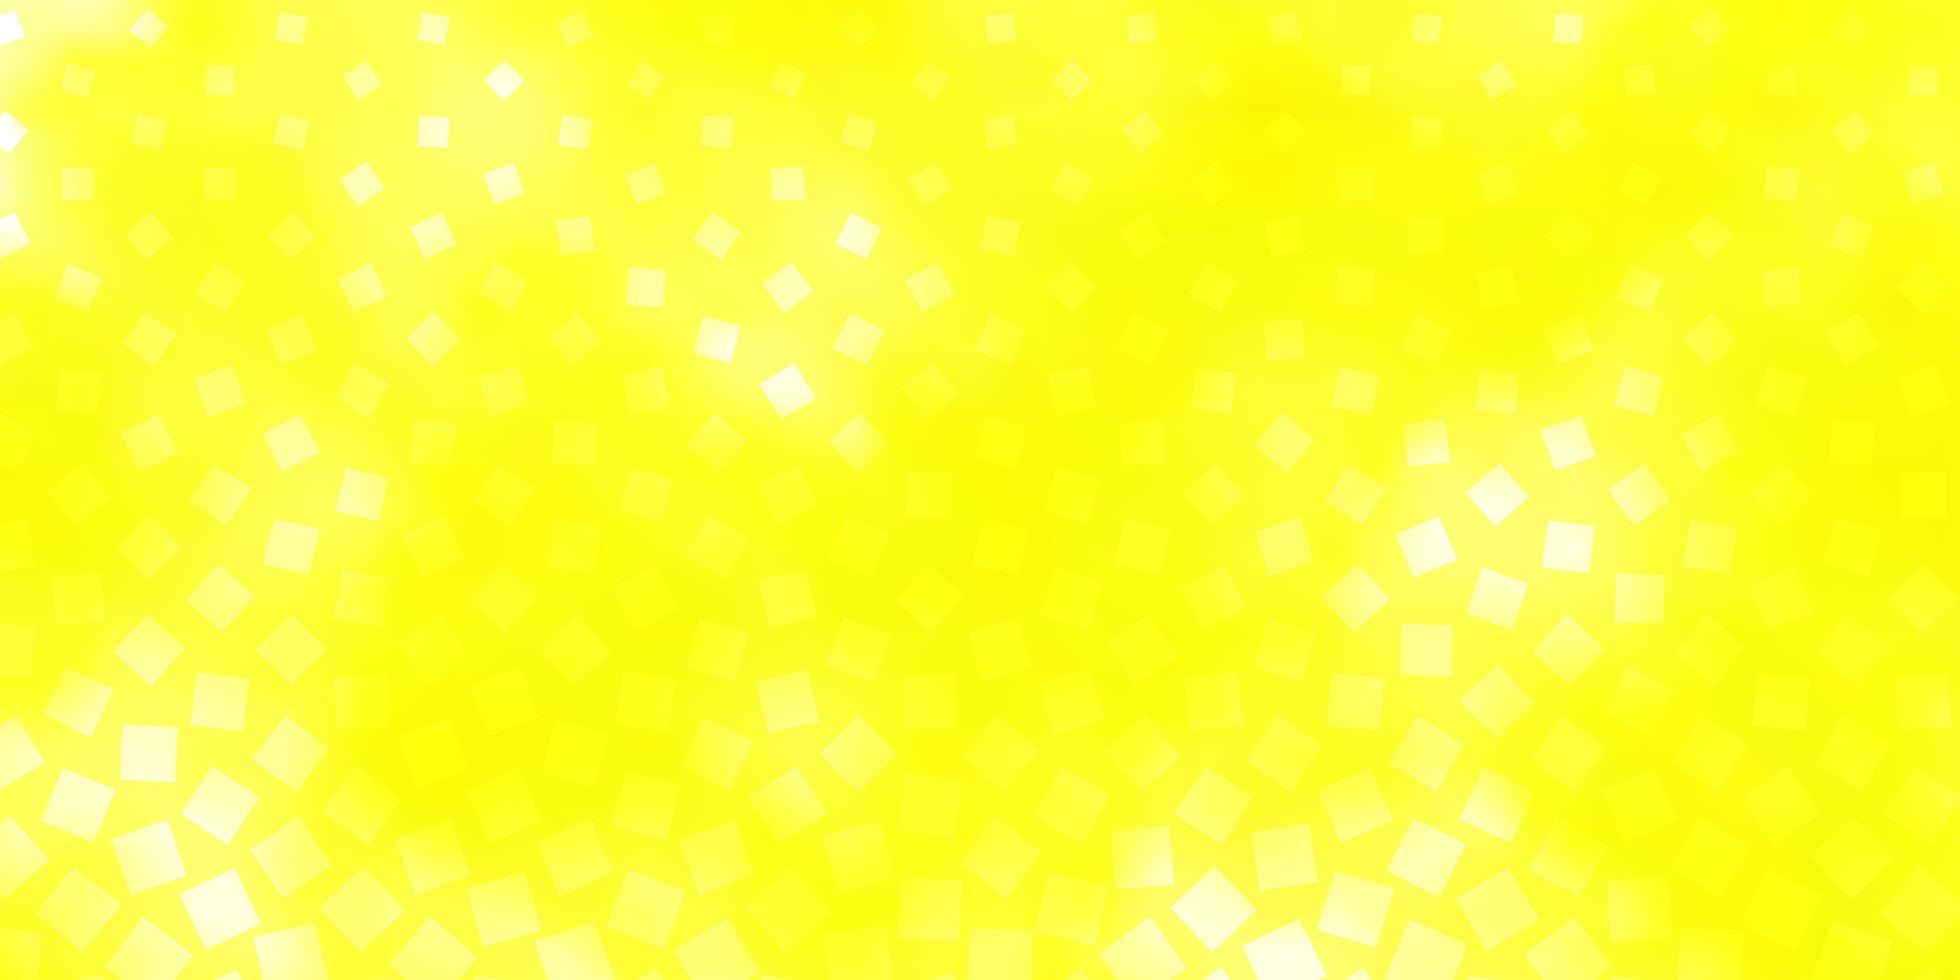 fond de vecteur jaune clair avec des rectangles.